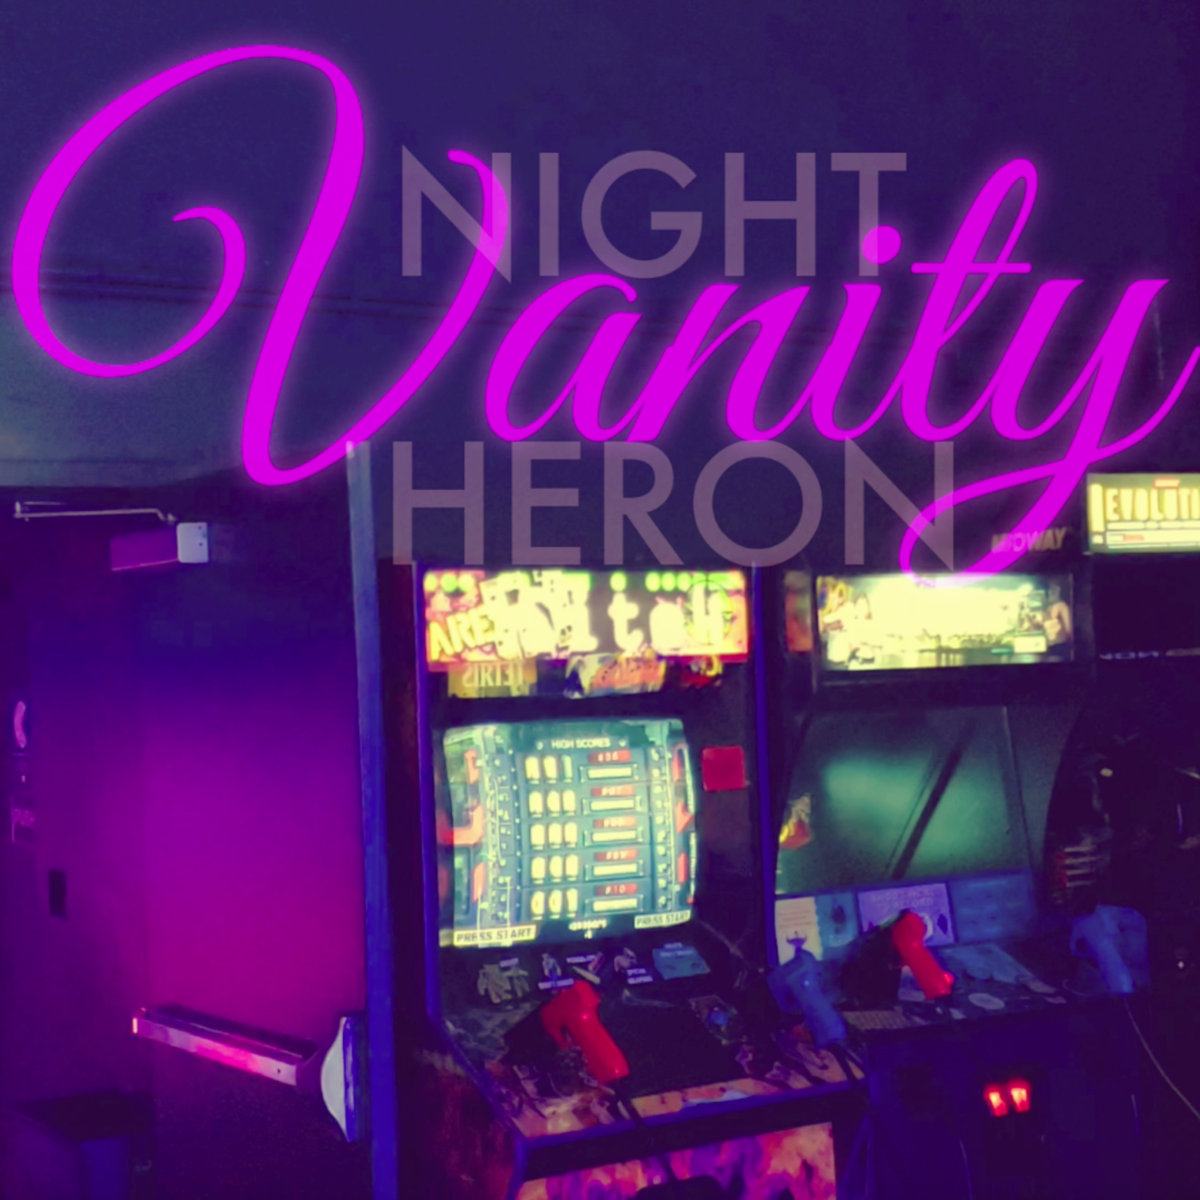 * Night Heron - Vanity